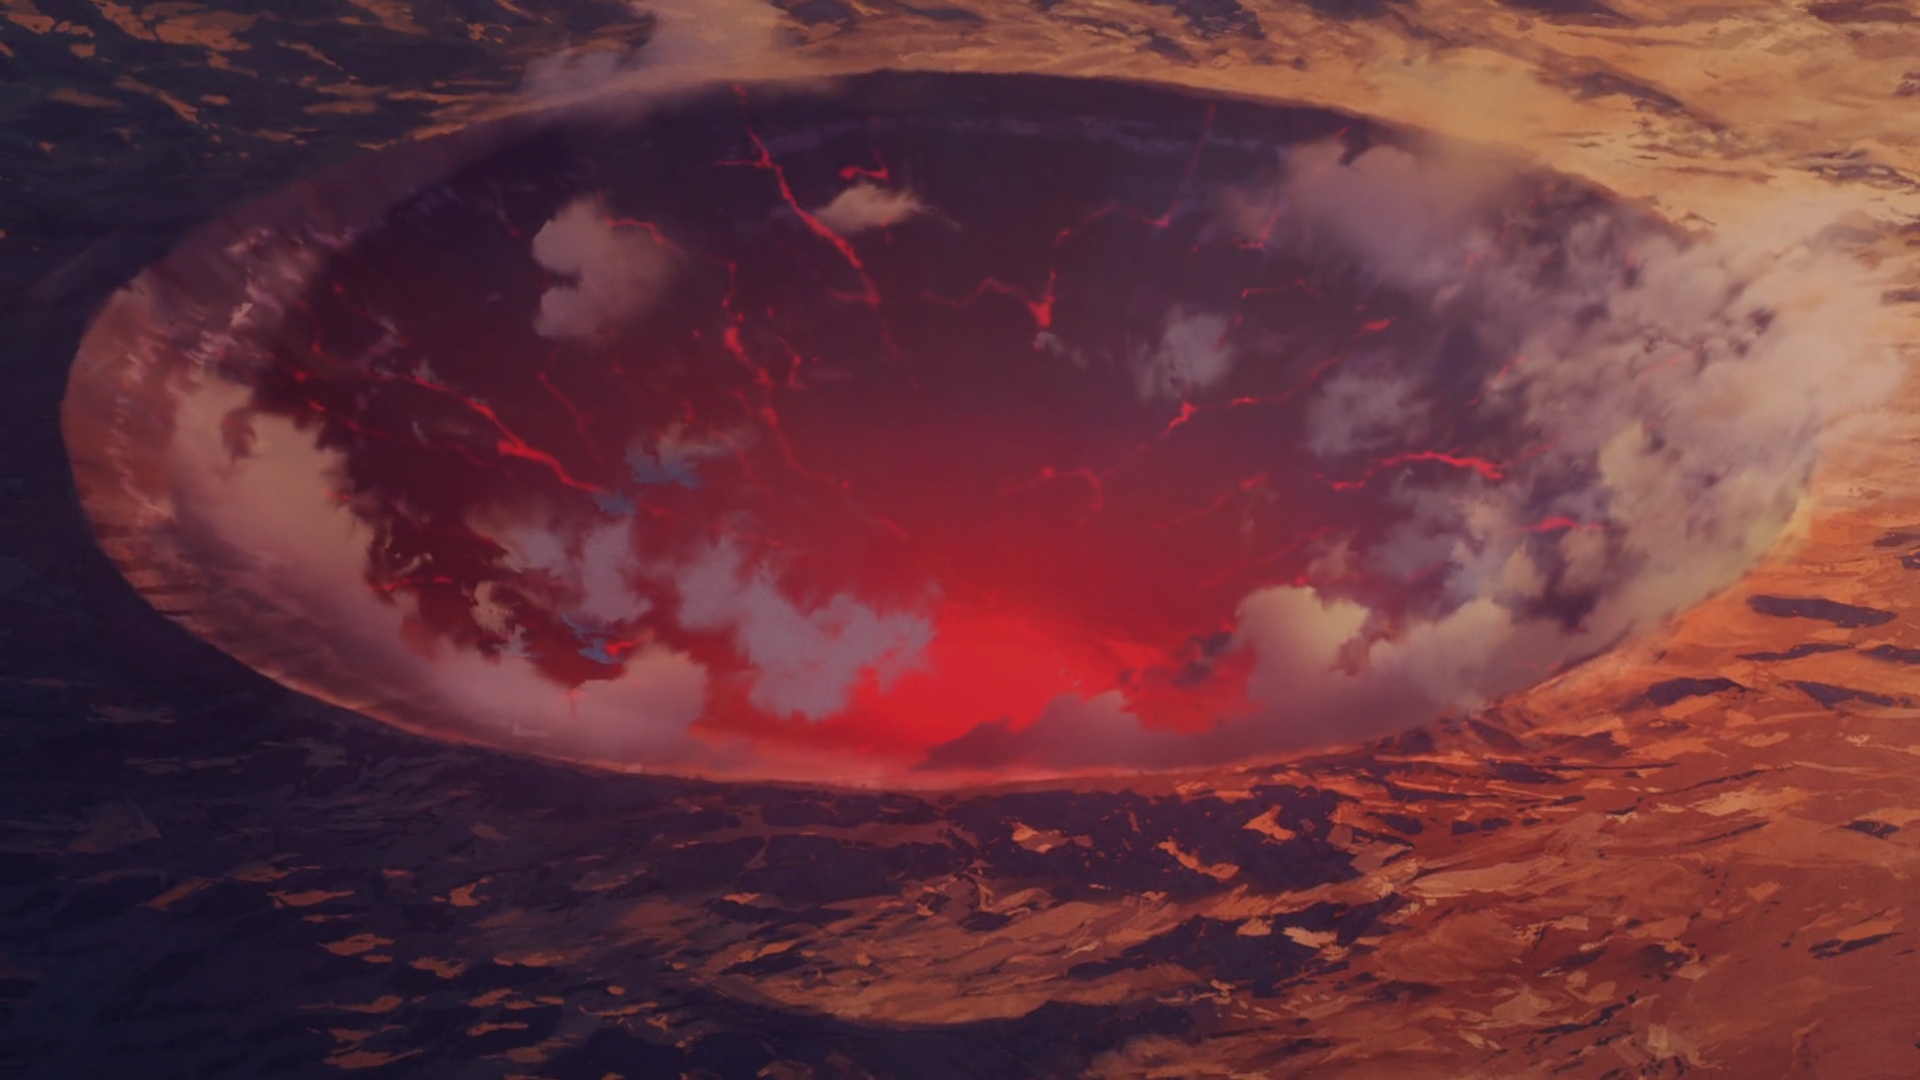 Fate Series Fate Strange Fake Anime Anime Screenshot Clouds Landscape Crater 1920x1080